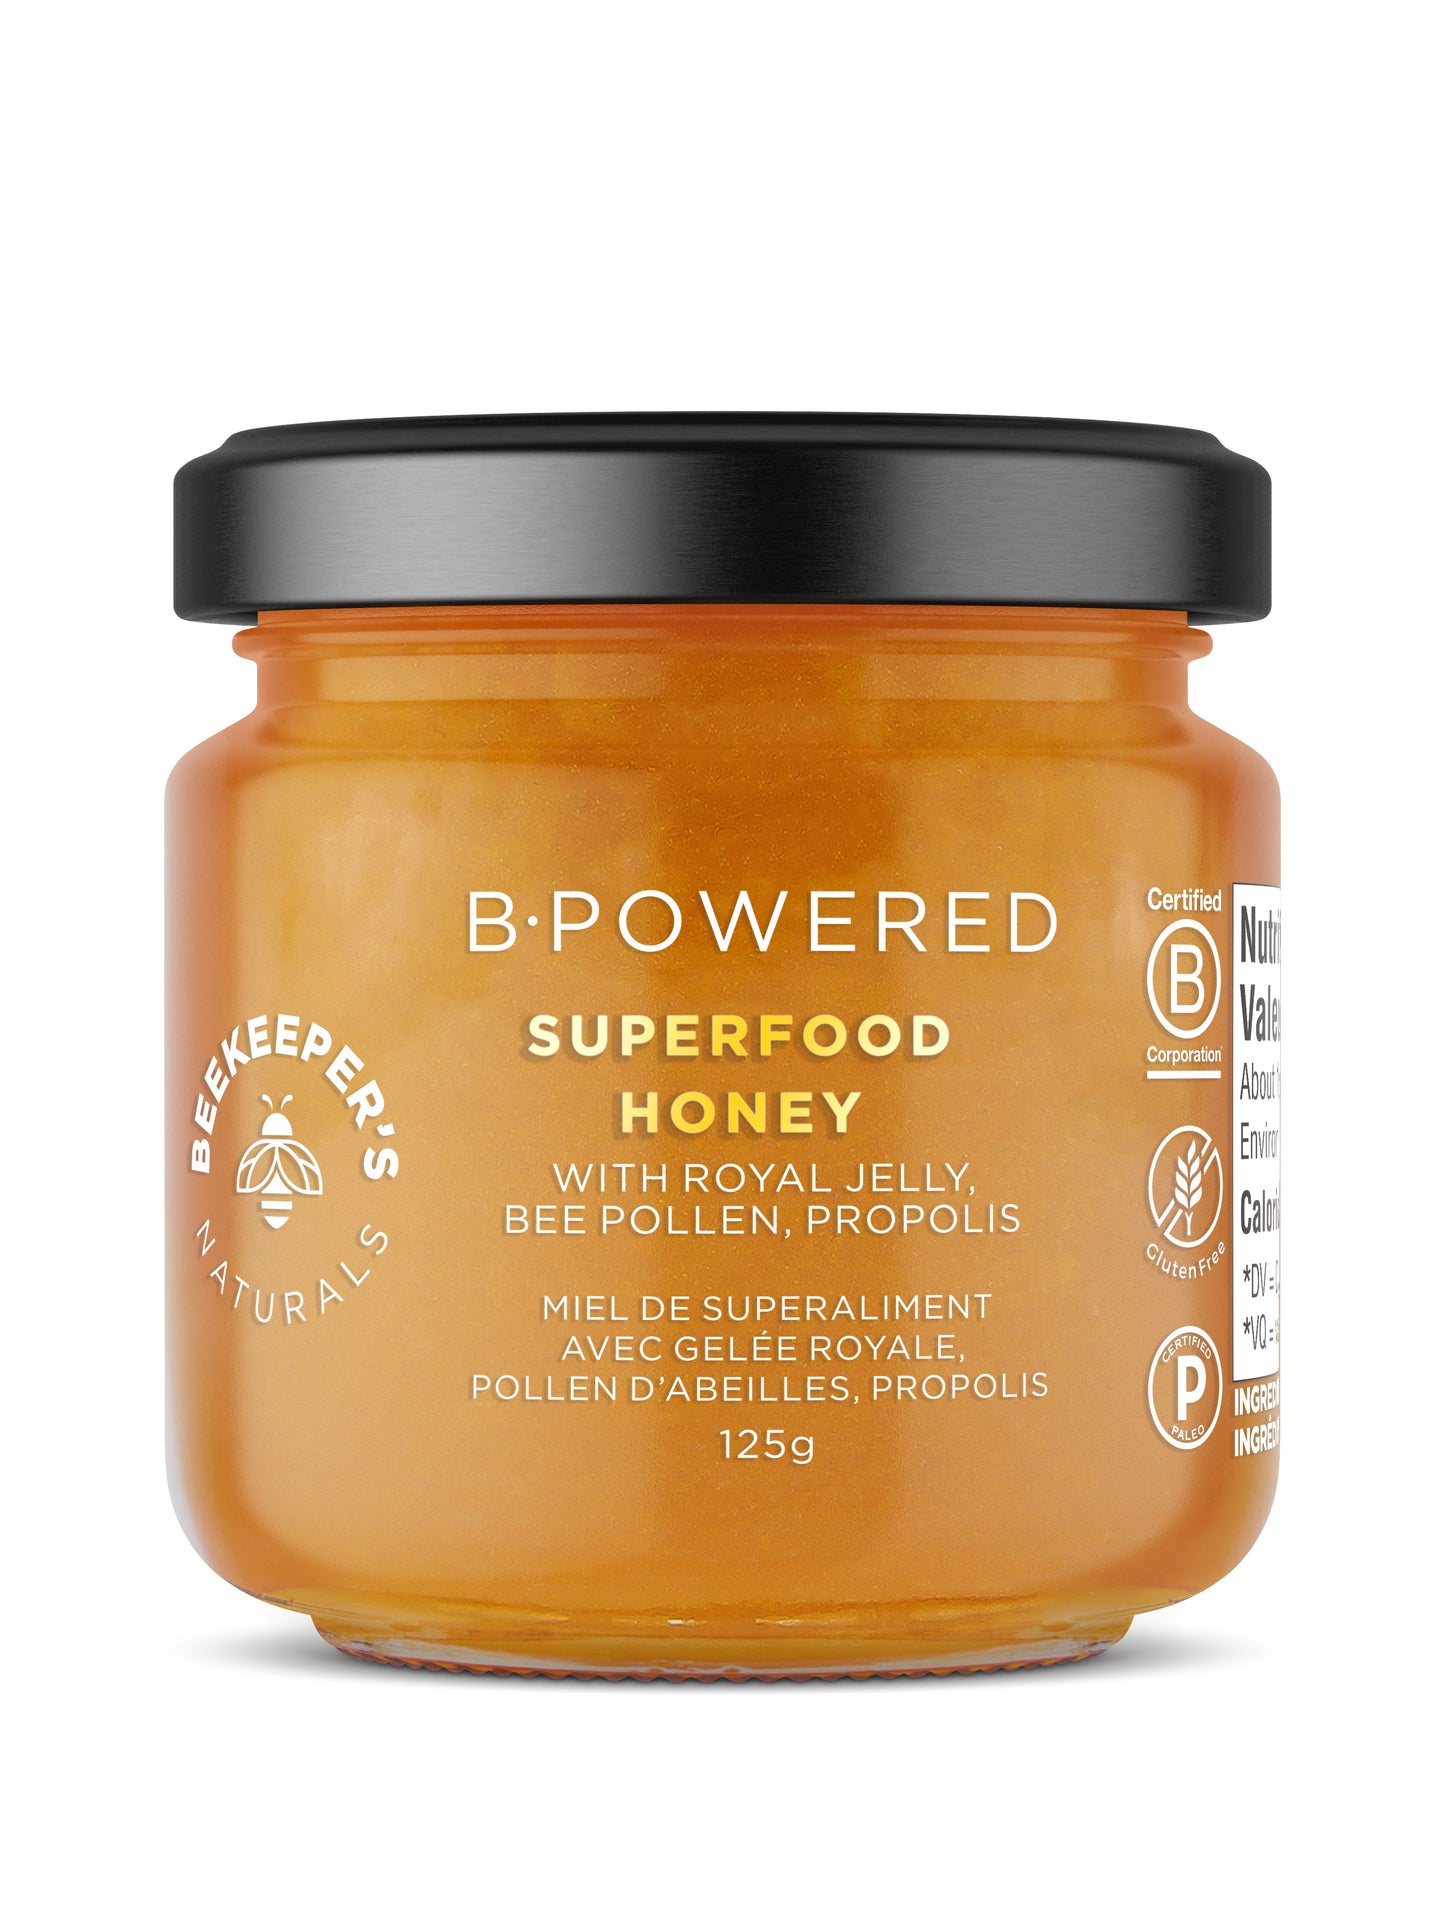 B. Powered Superfood Honey